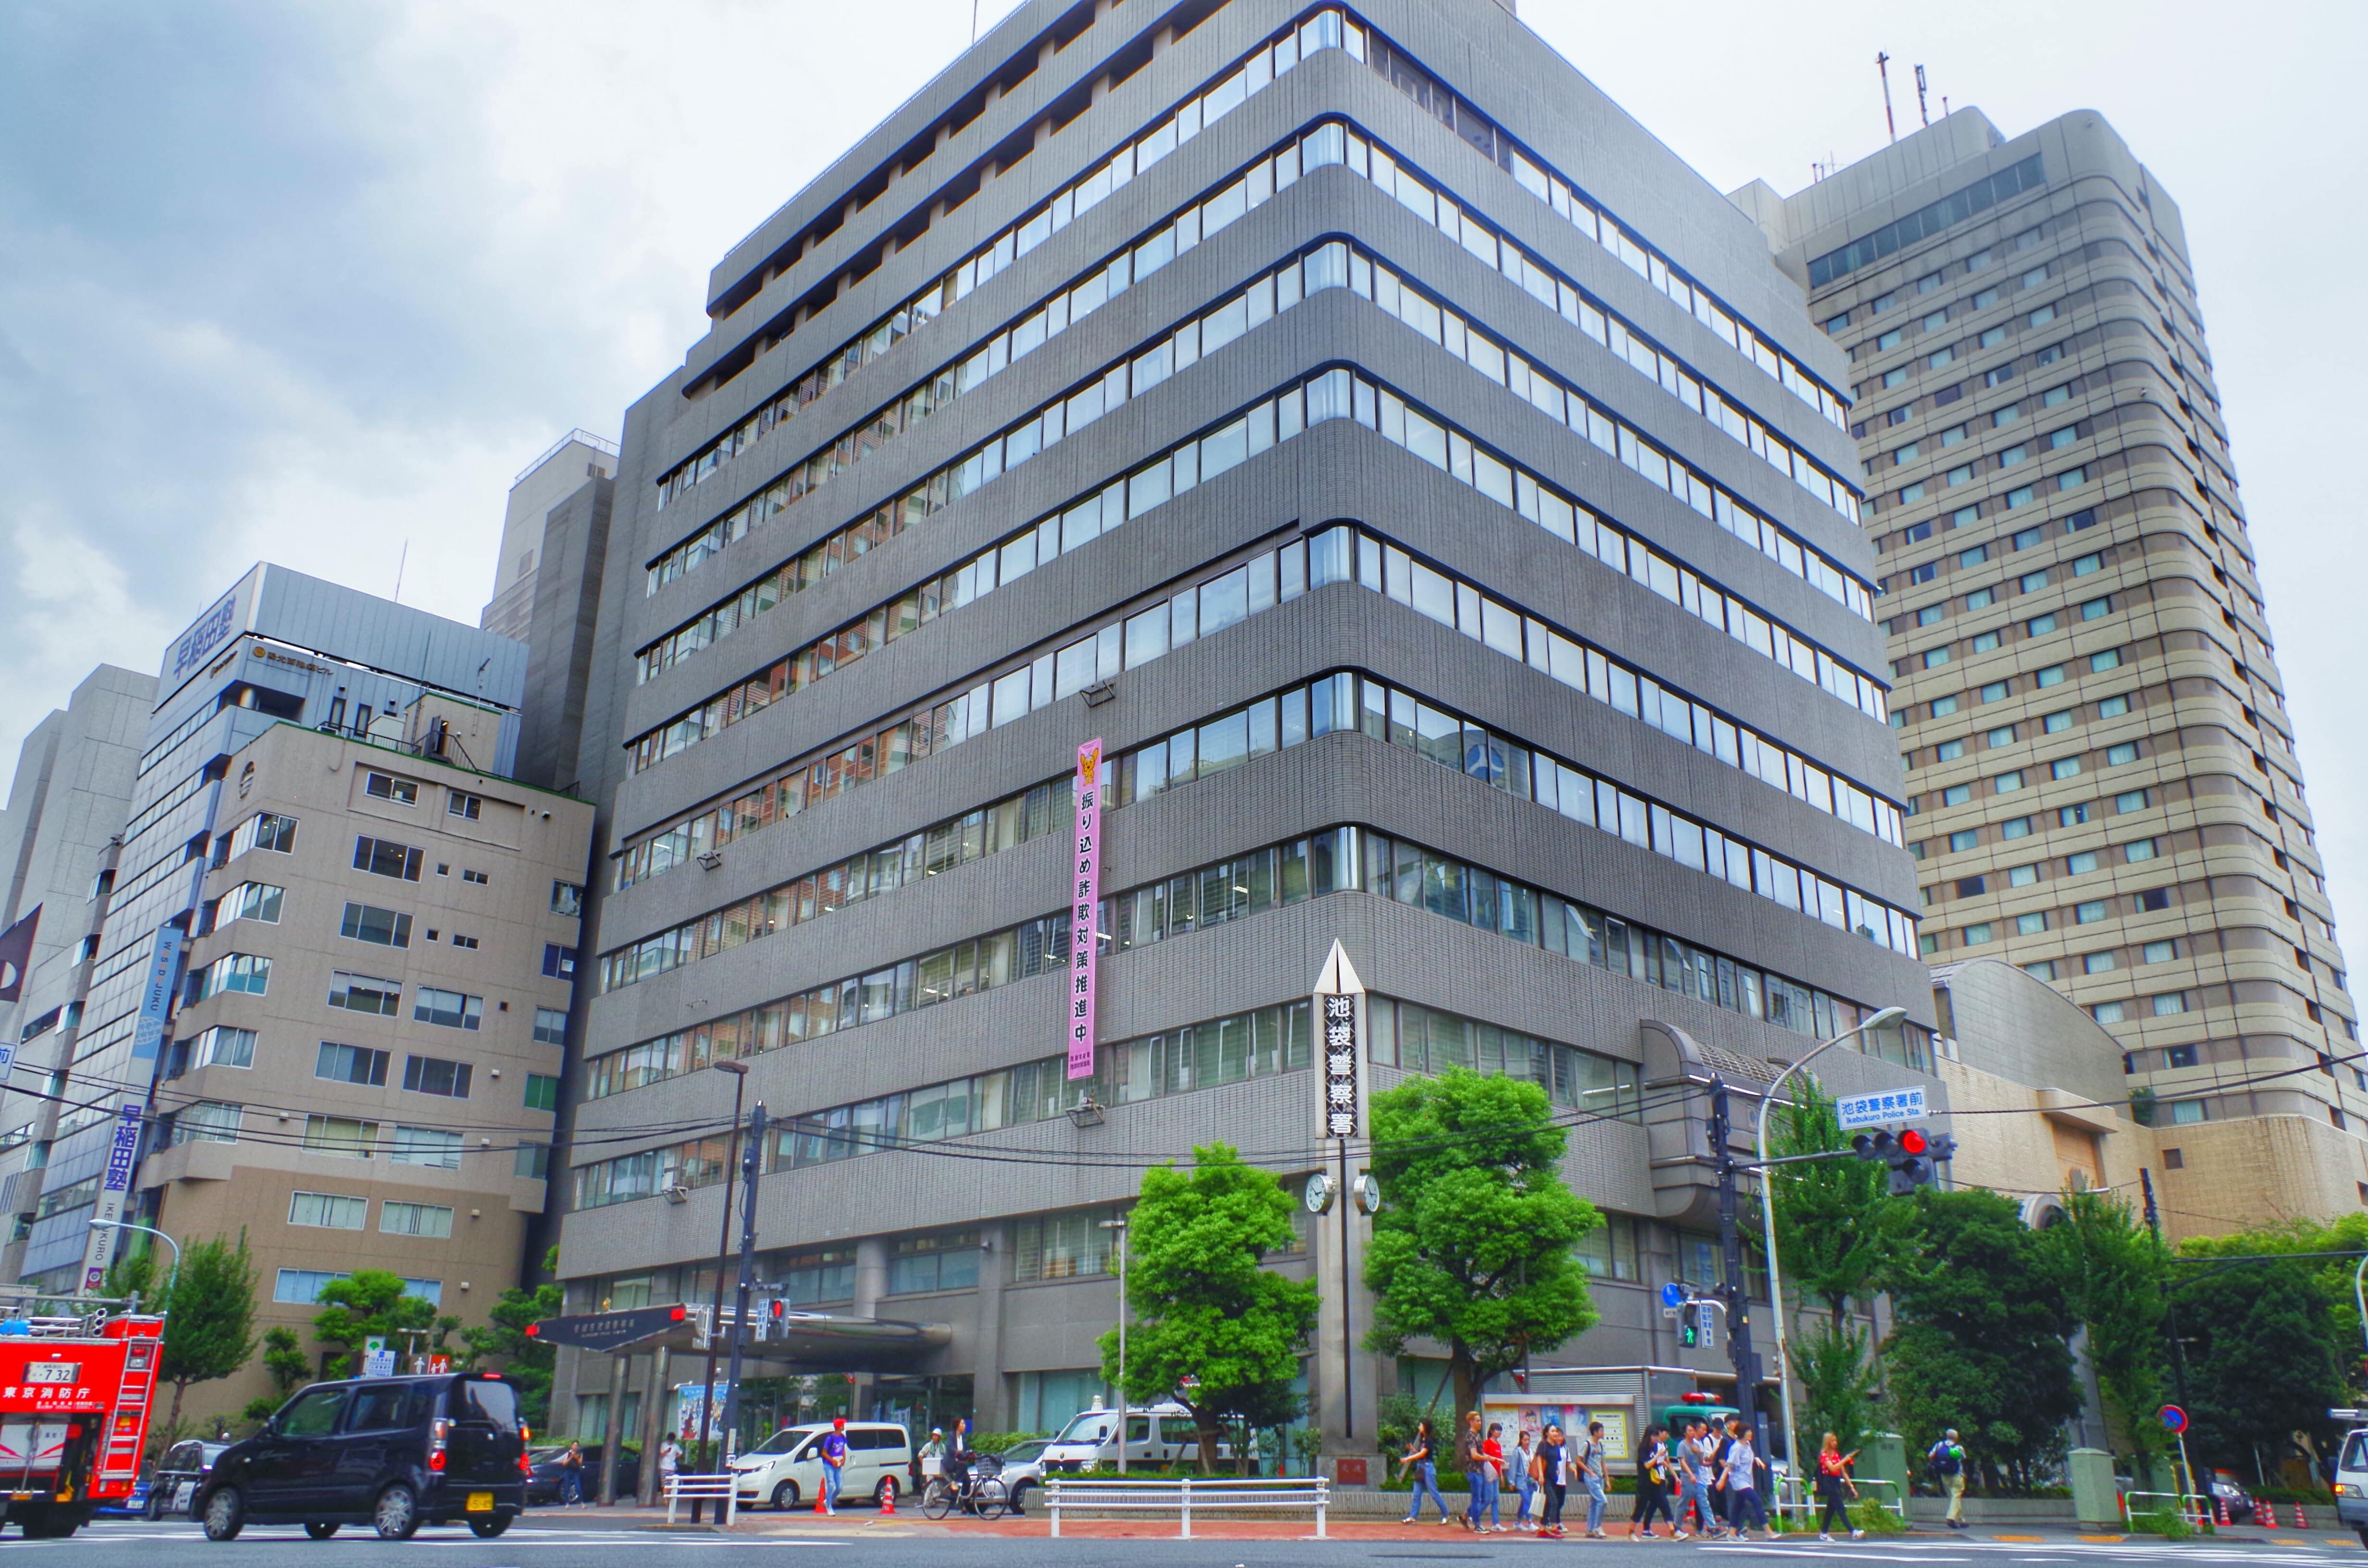 Ikebukuro Police Station (池袋警察署)